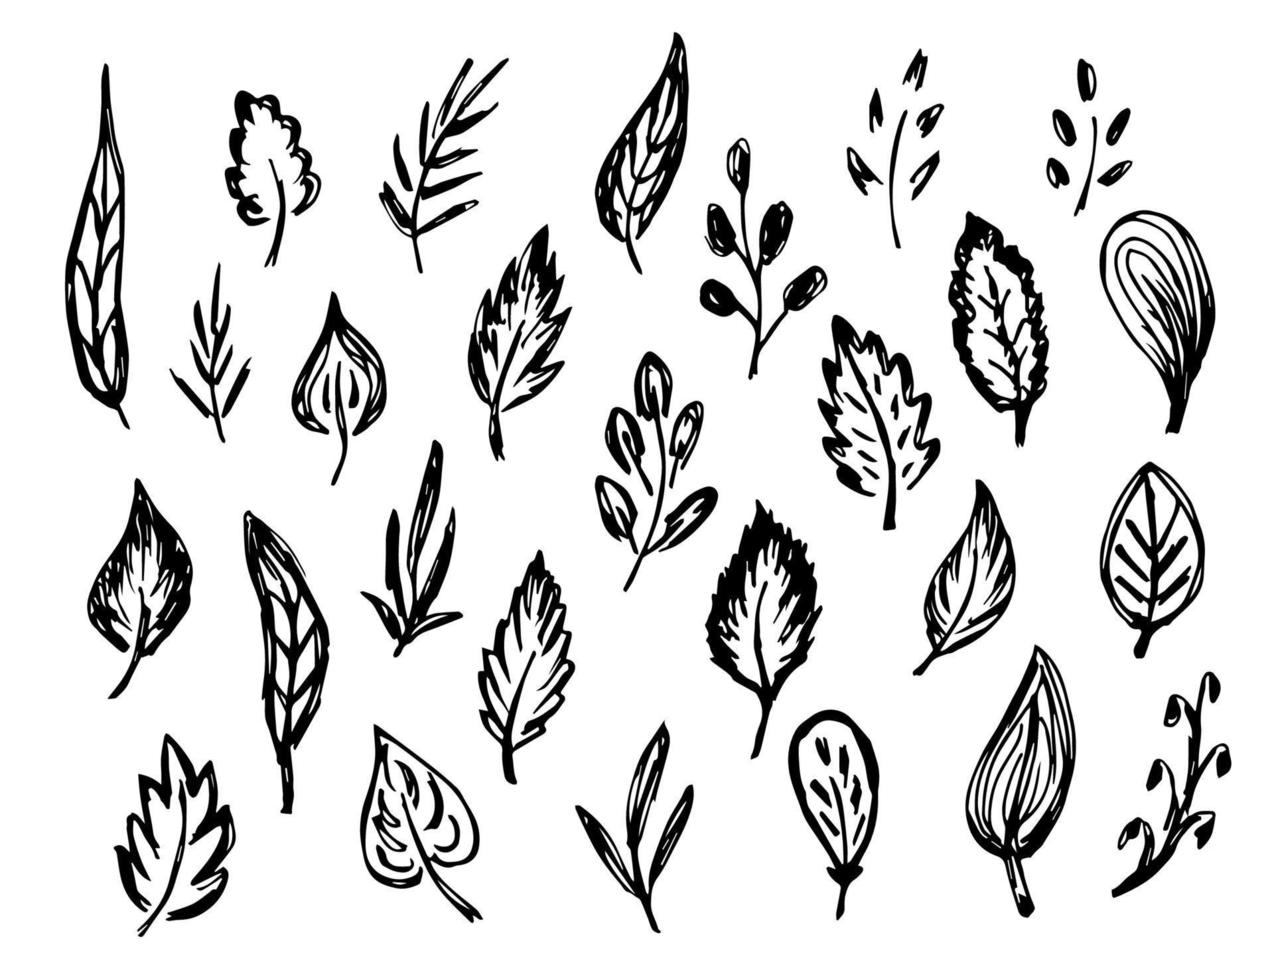 conjunto de doodle de vetor preto e branco esboçado à mão livre. folhas, galho, galho, folhagem. elementos da natureza para criar padrões, design. desenho a tinta.